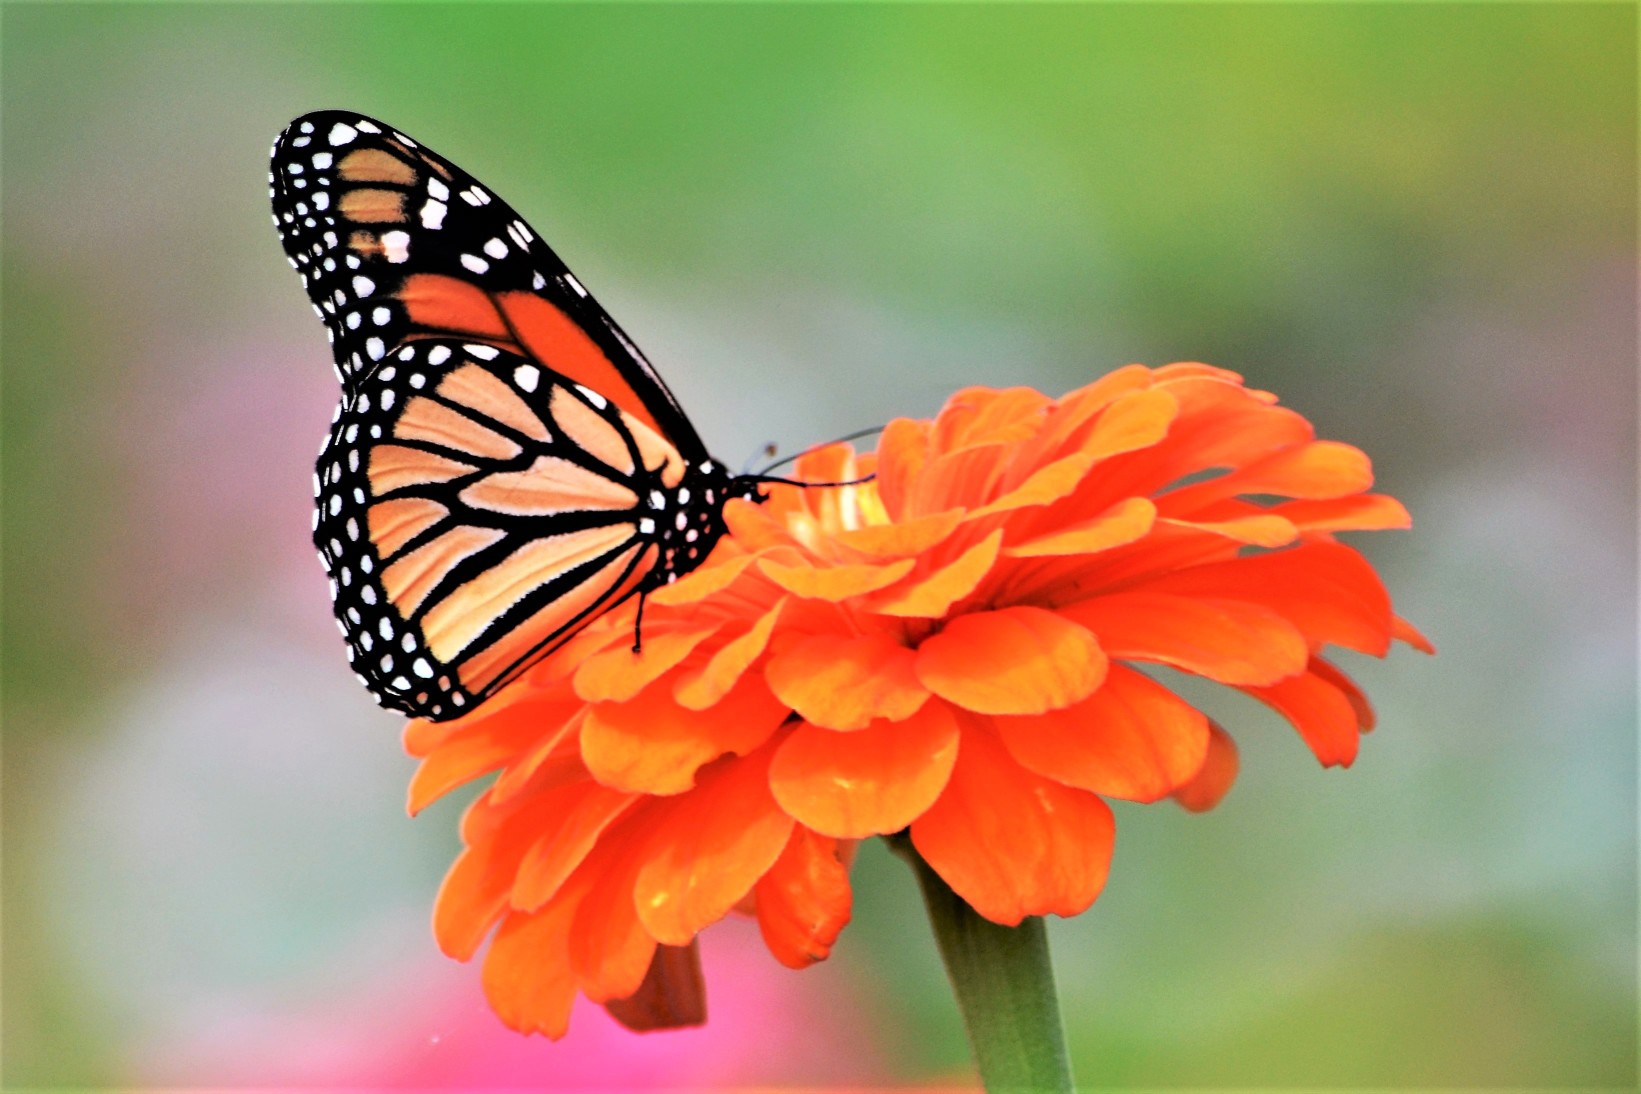 monarch-butterfly-on-an-orange-dahlia-flower-flowersphotography-flowersphoto-flowerstalking-flowerday_t20_GJKK8R